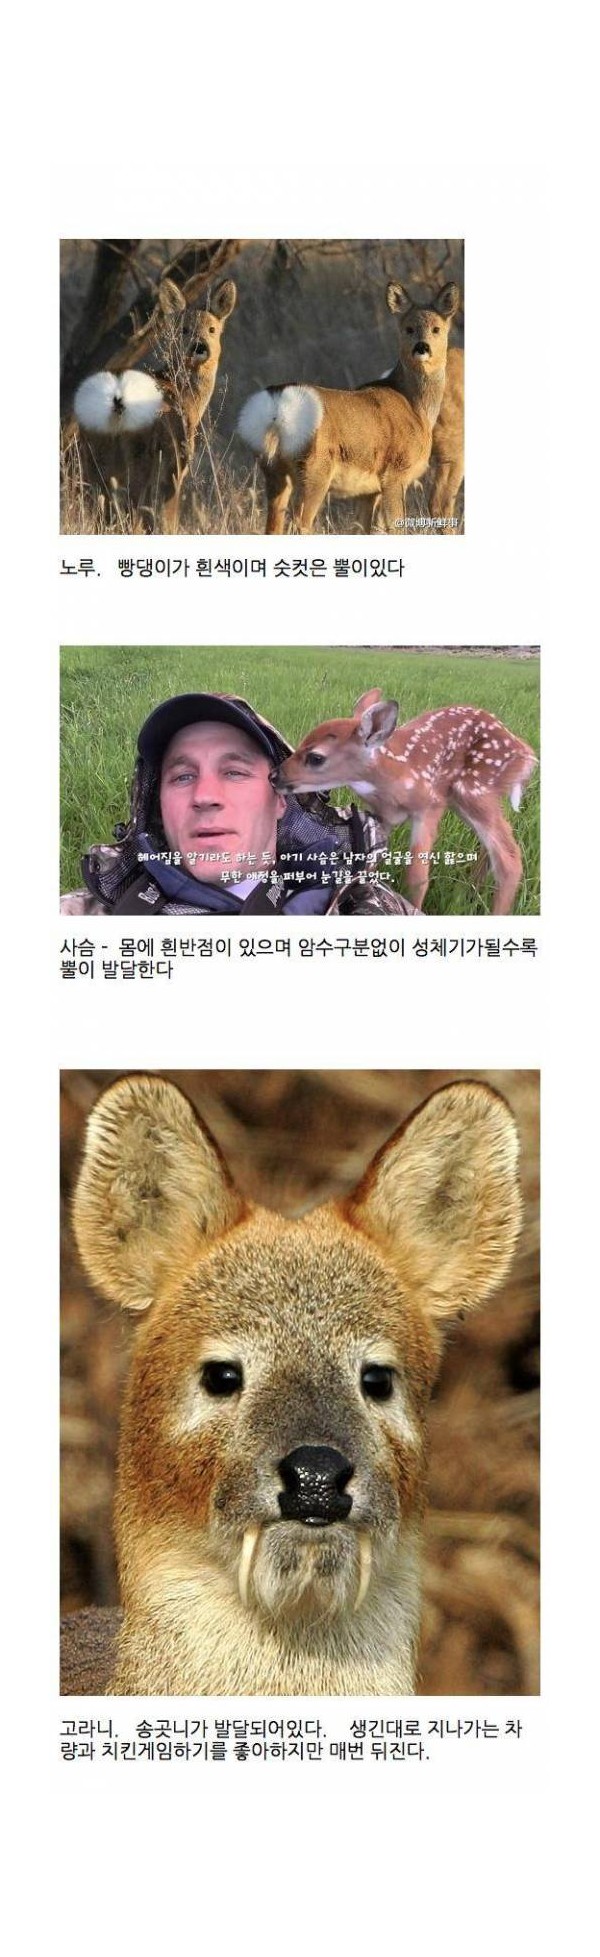 노루와 사슴, 고라니 분류법.jpg